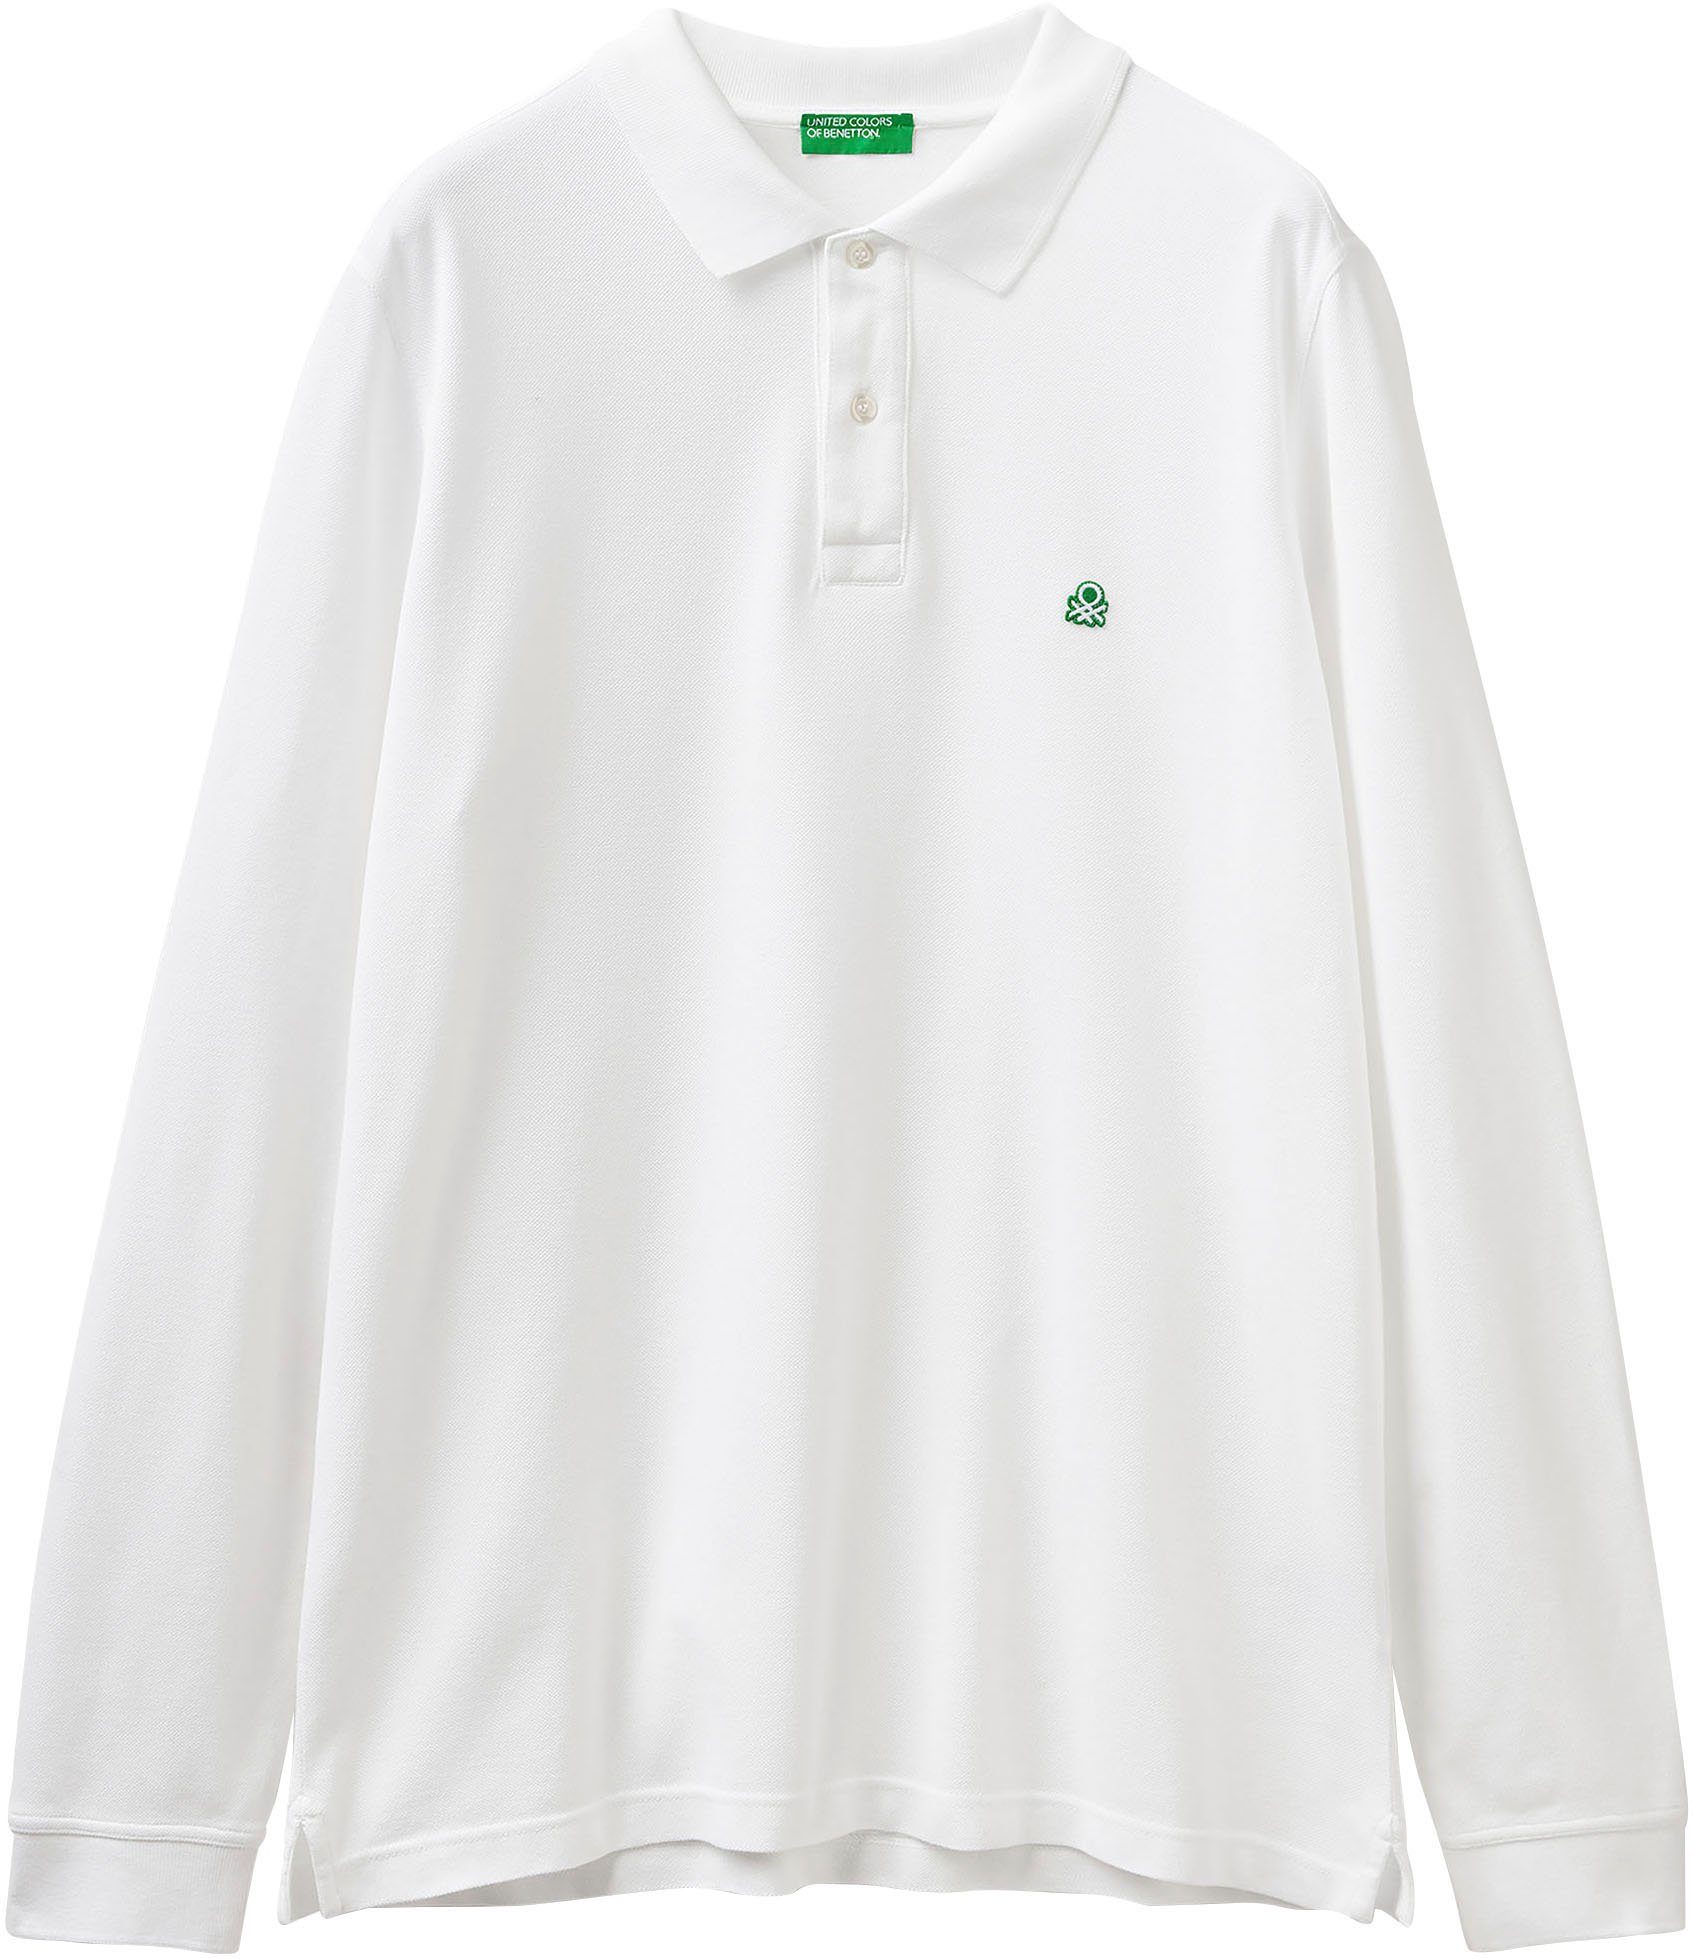 United Schlitzen Benetton kleinen weiß Langarm-Poloshirt mit seitlichen, Colors of